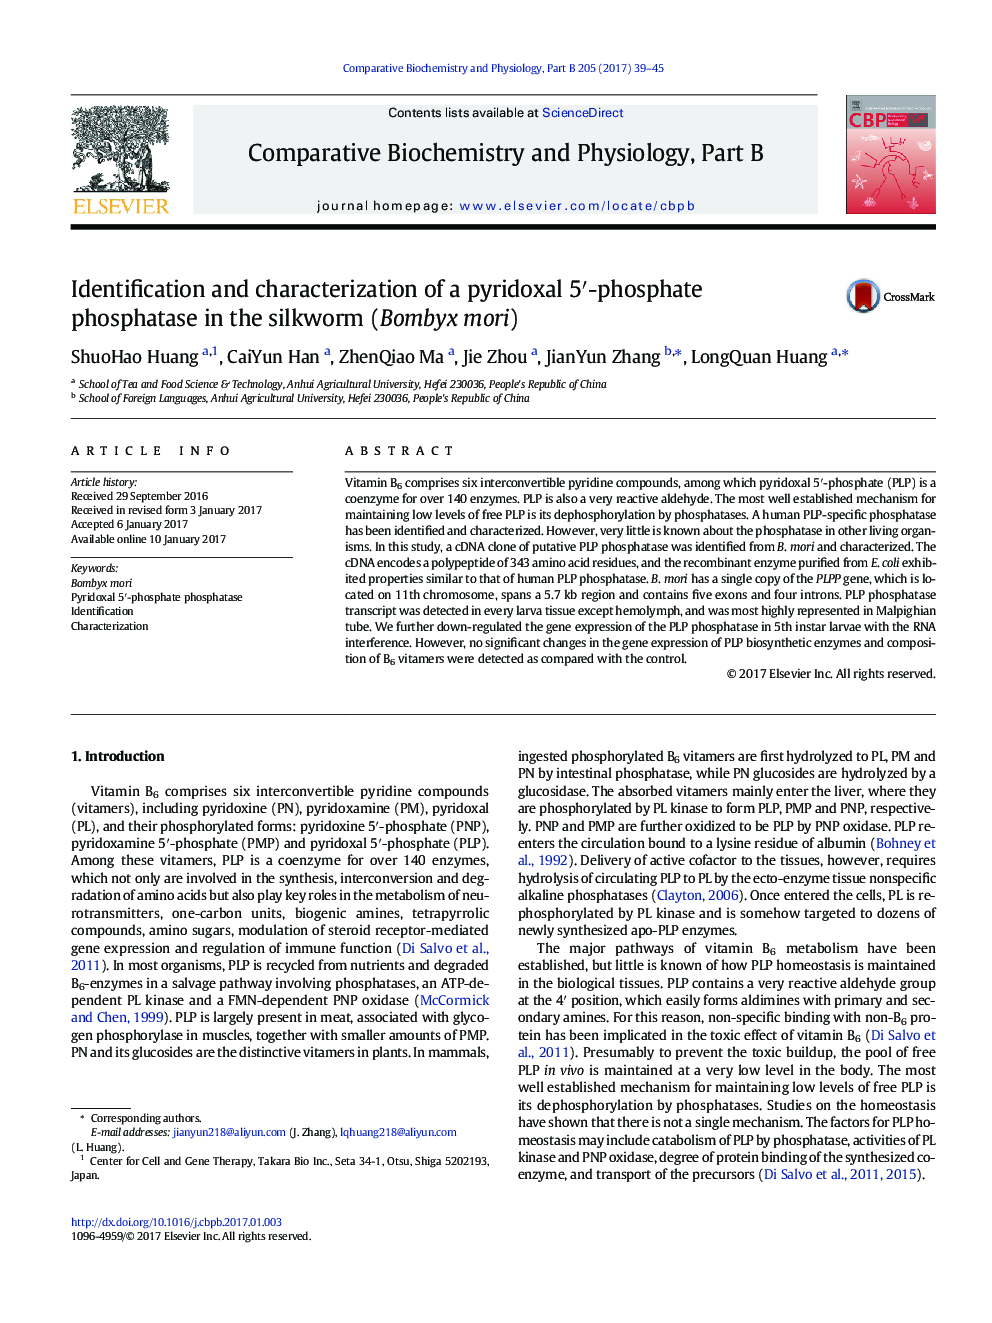 Identification and characterization of a pyridoxal 5â²-phosphate phosphatase in the silkworm (Bombyx mori)